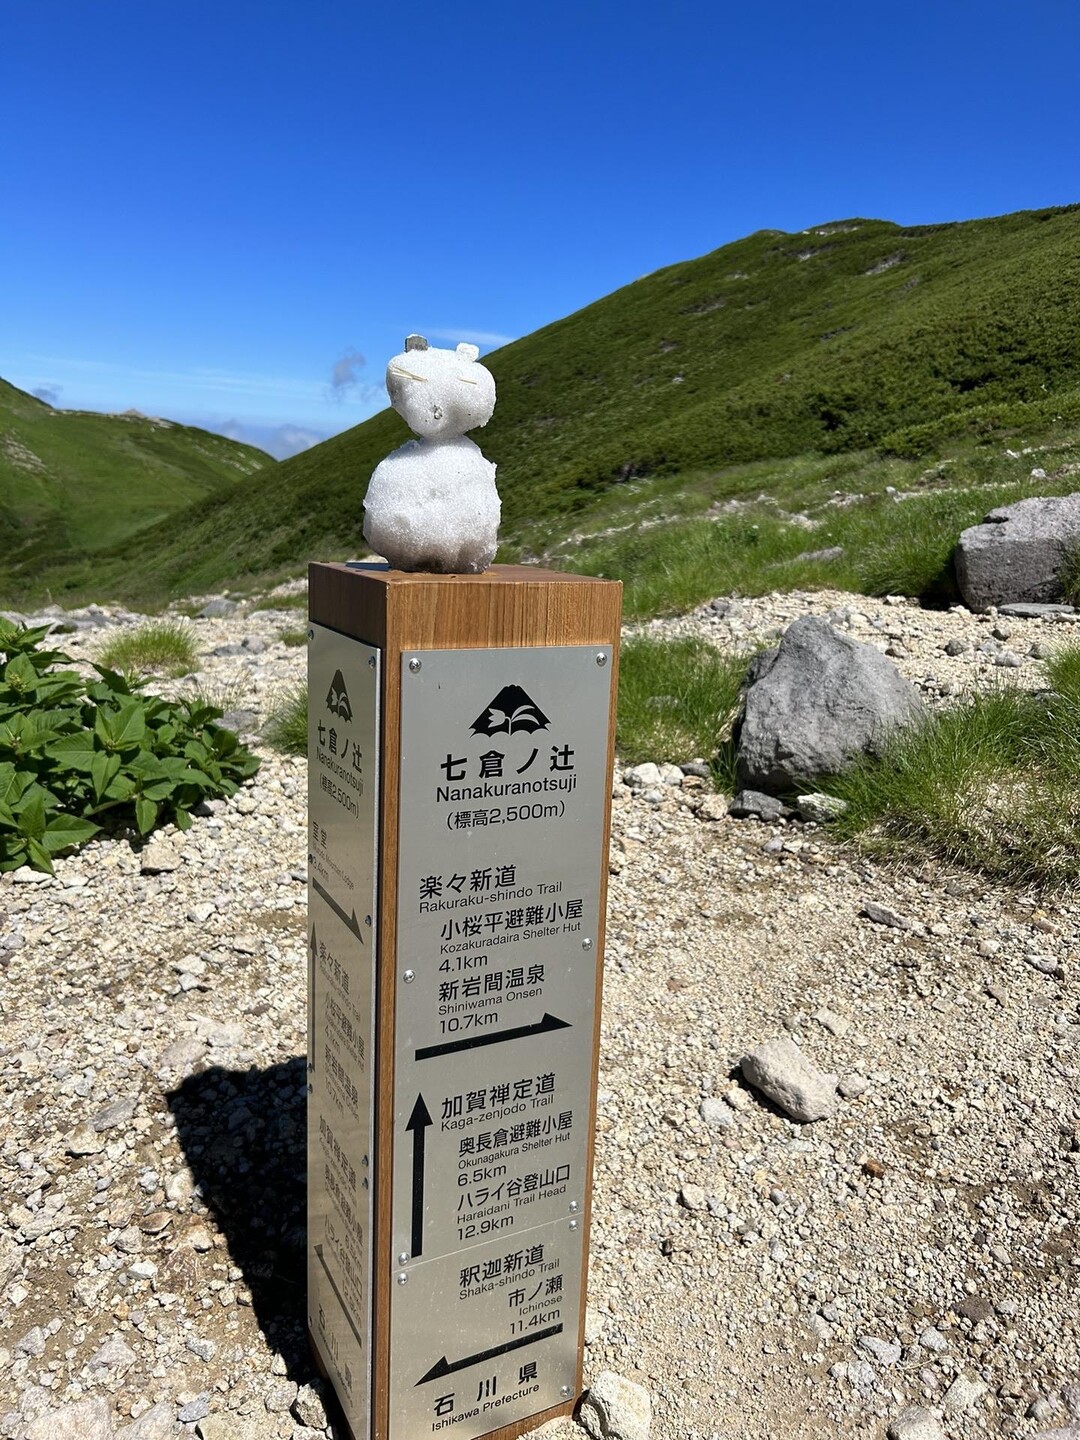 別山・白山・七倉山 / オケラさんの白山・別山・銚子ヶ峰の活動データ | YAMAP / ヤマップ